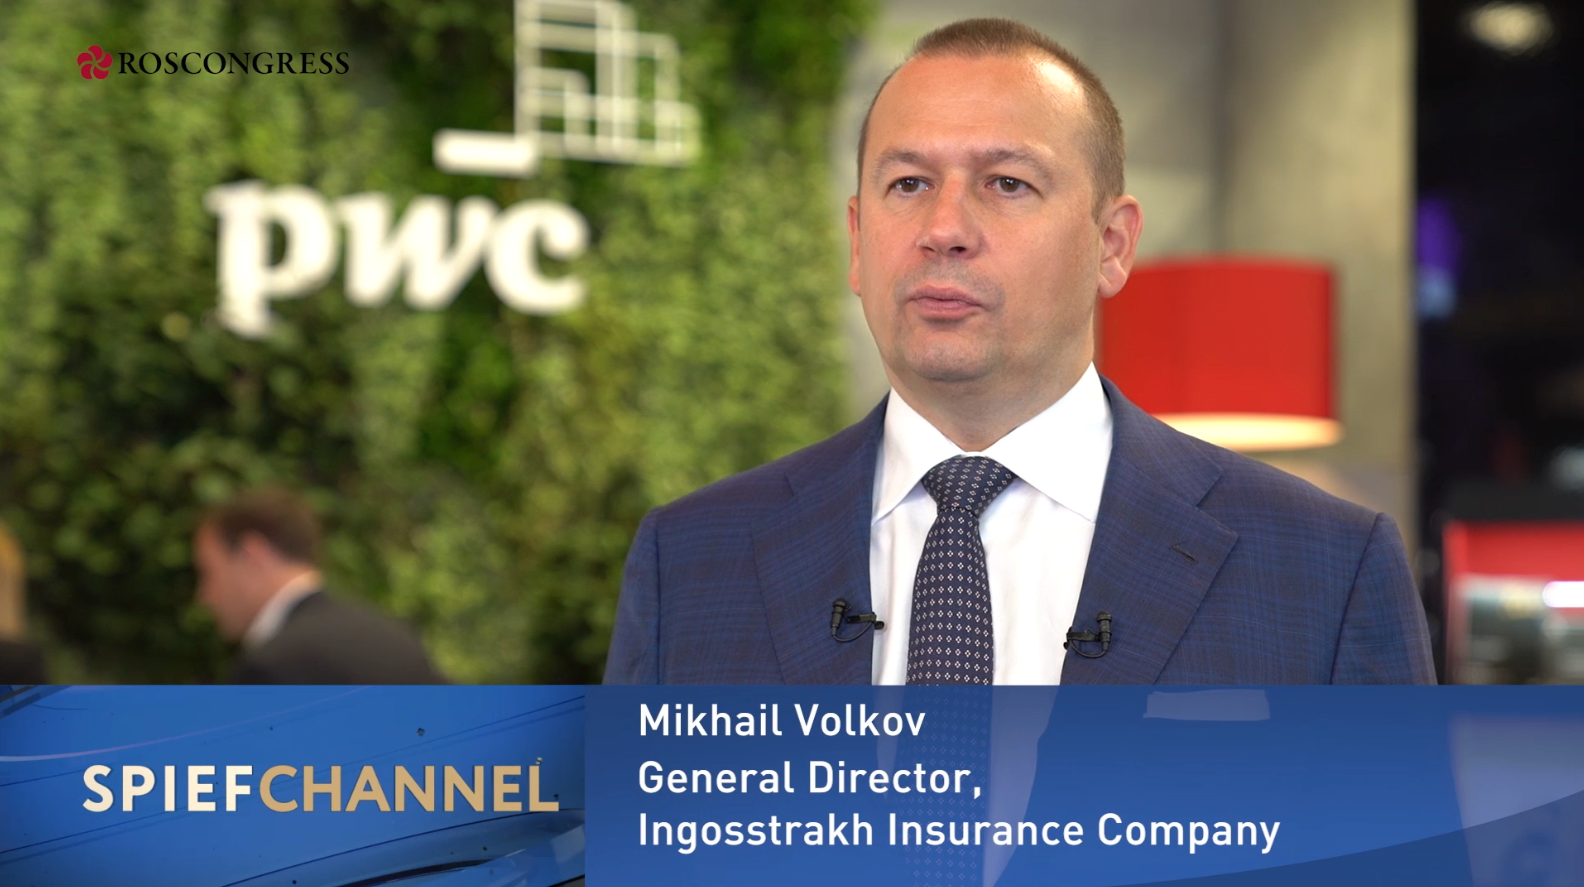 Mikhail Volkov, CEO, Ingosstrakh Insurance Company